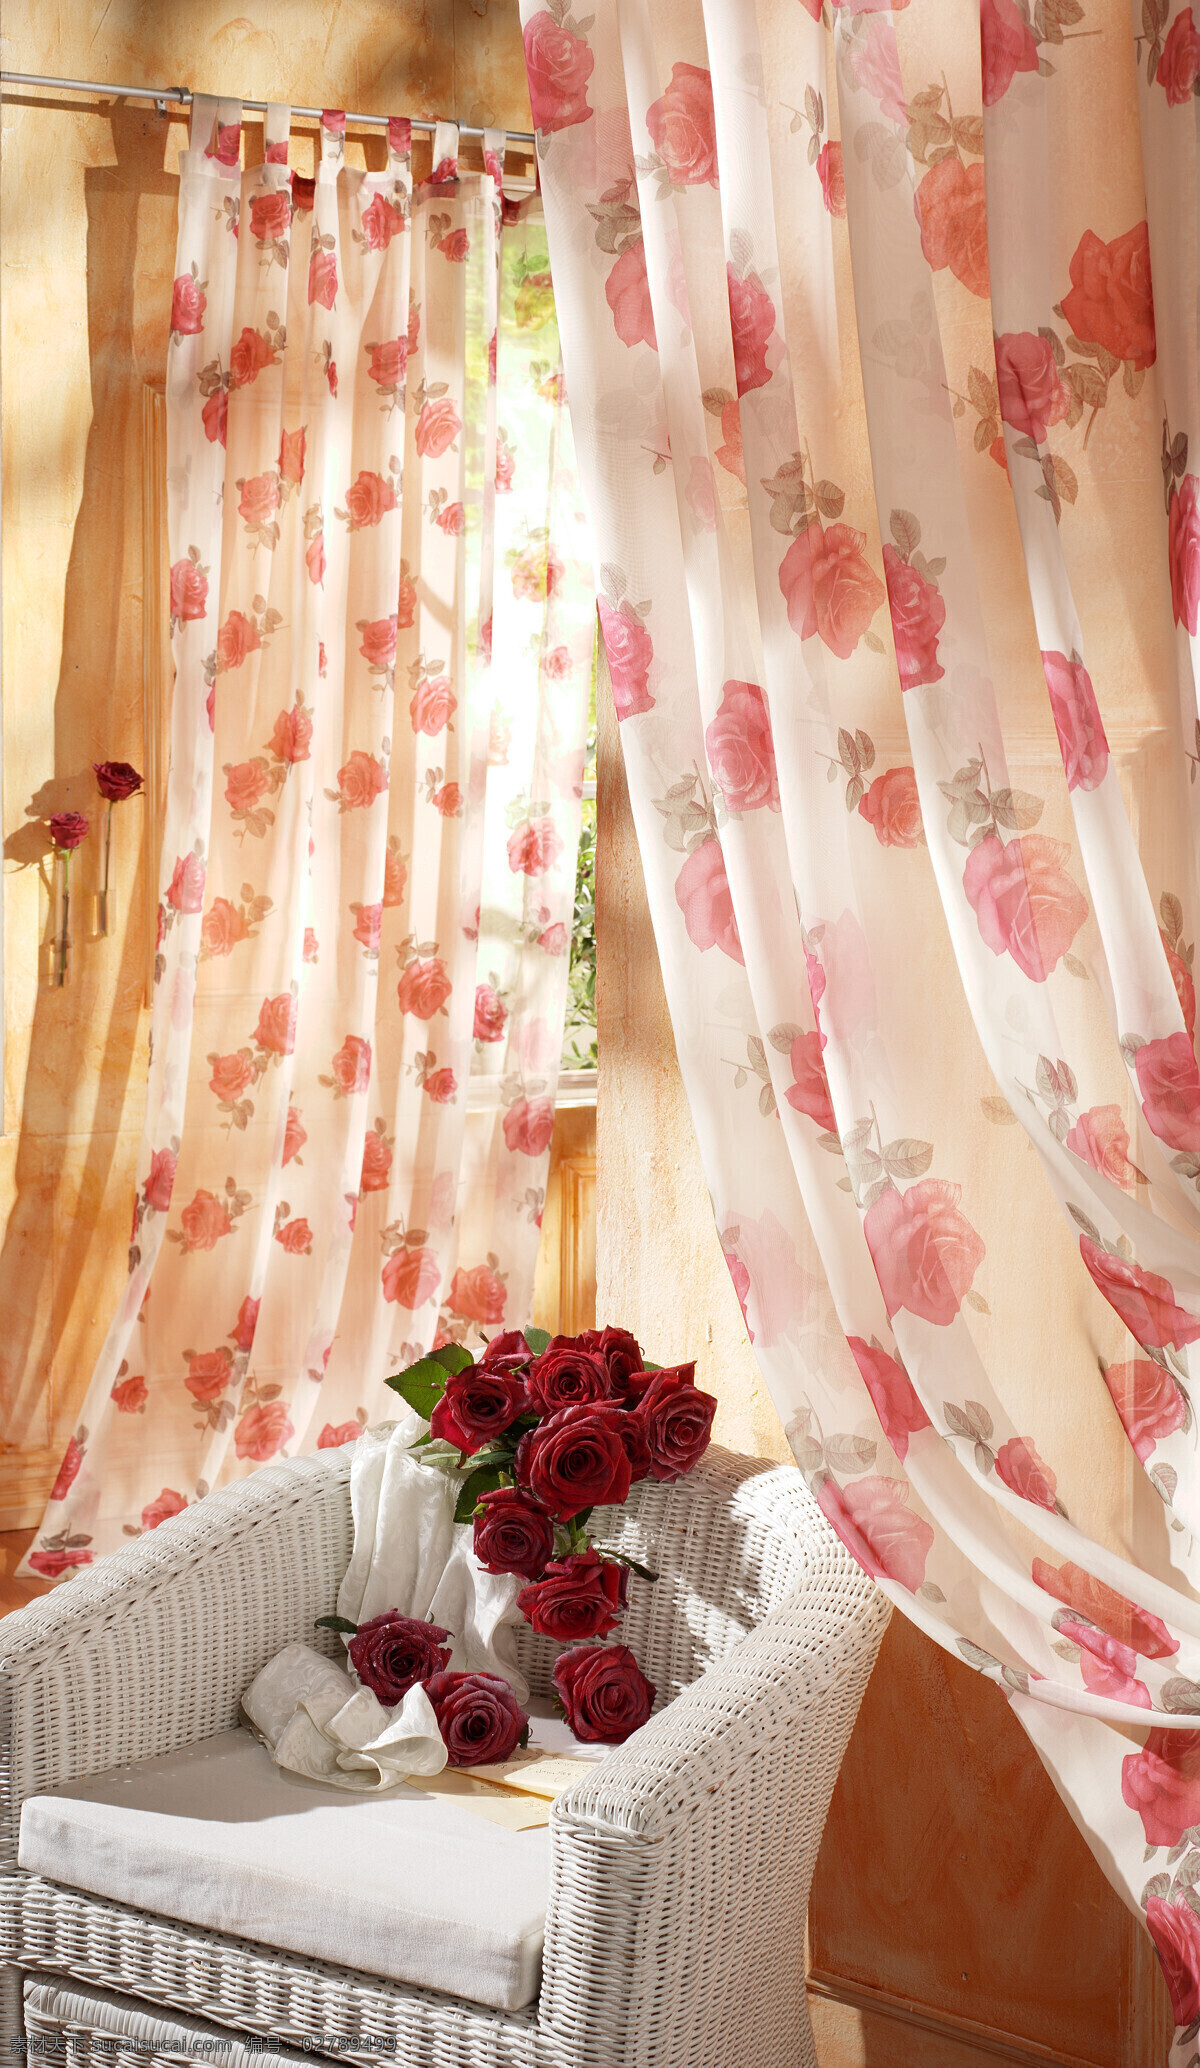 花饰窗帘 窗帘 玫瑰花 红玫瑰 沙发 圈椅 花束